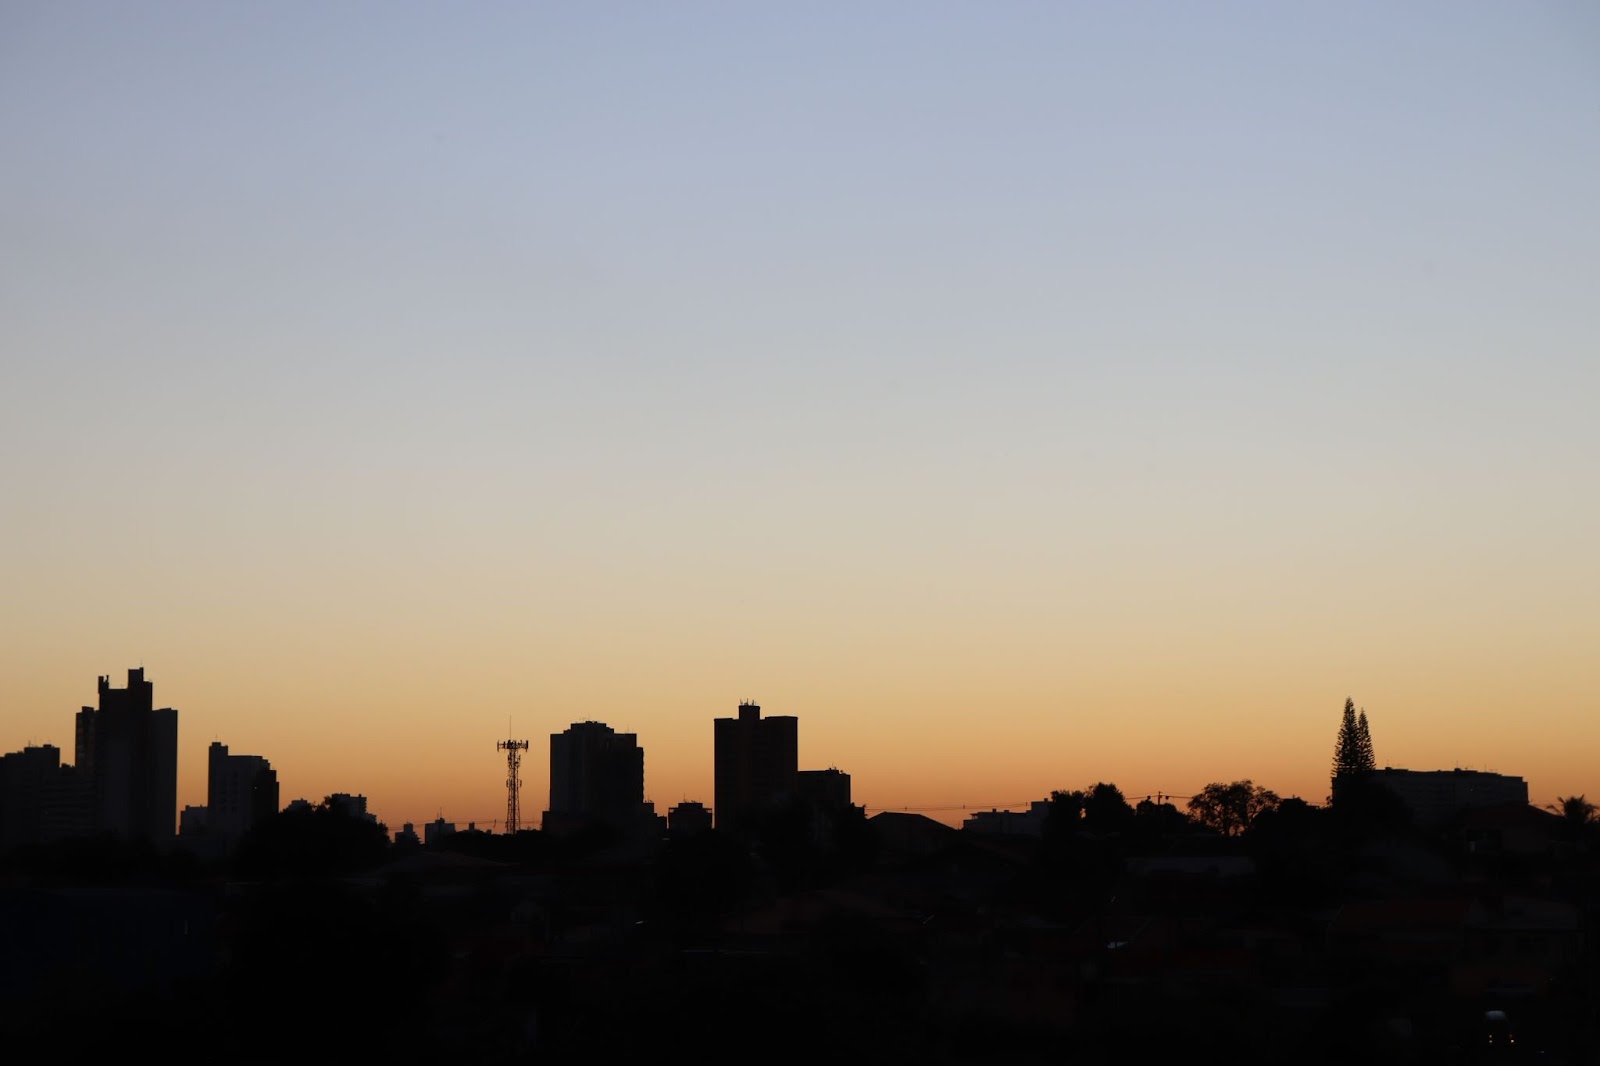 Paisagem da cidade de Londrina ao entardecer. Prédios de diferentes tamanhos contra a luz, com céu azul passando para o alaranjado no horizonte.